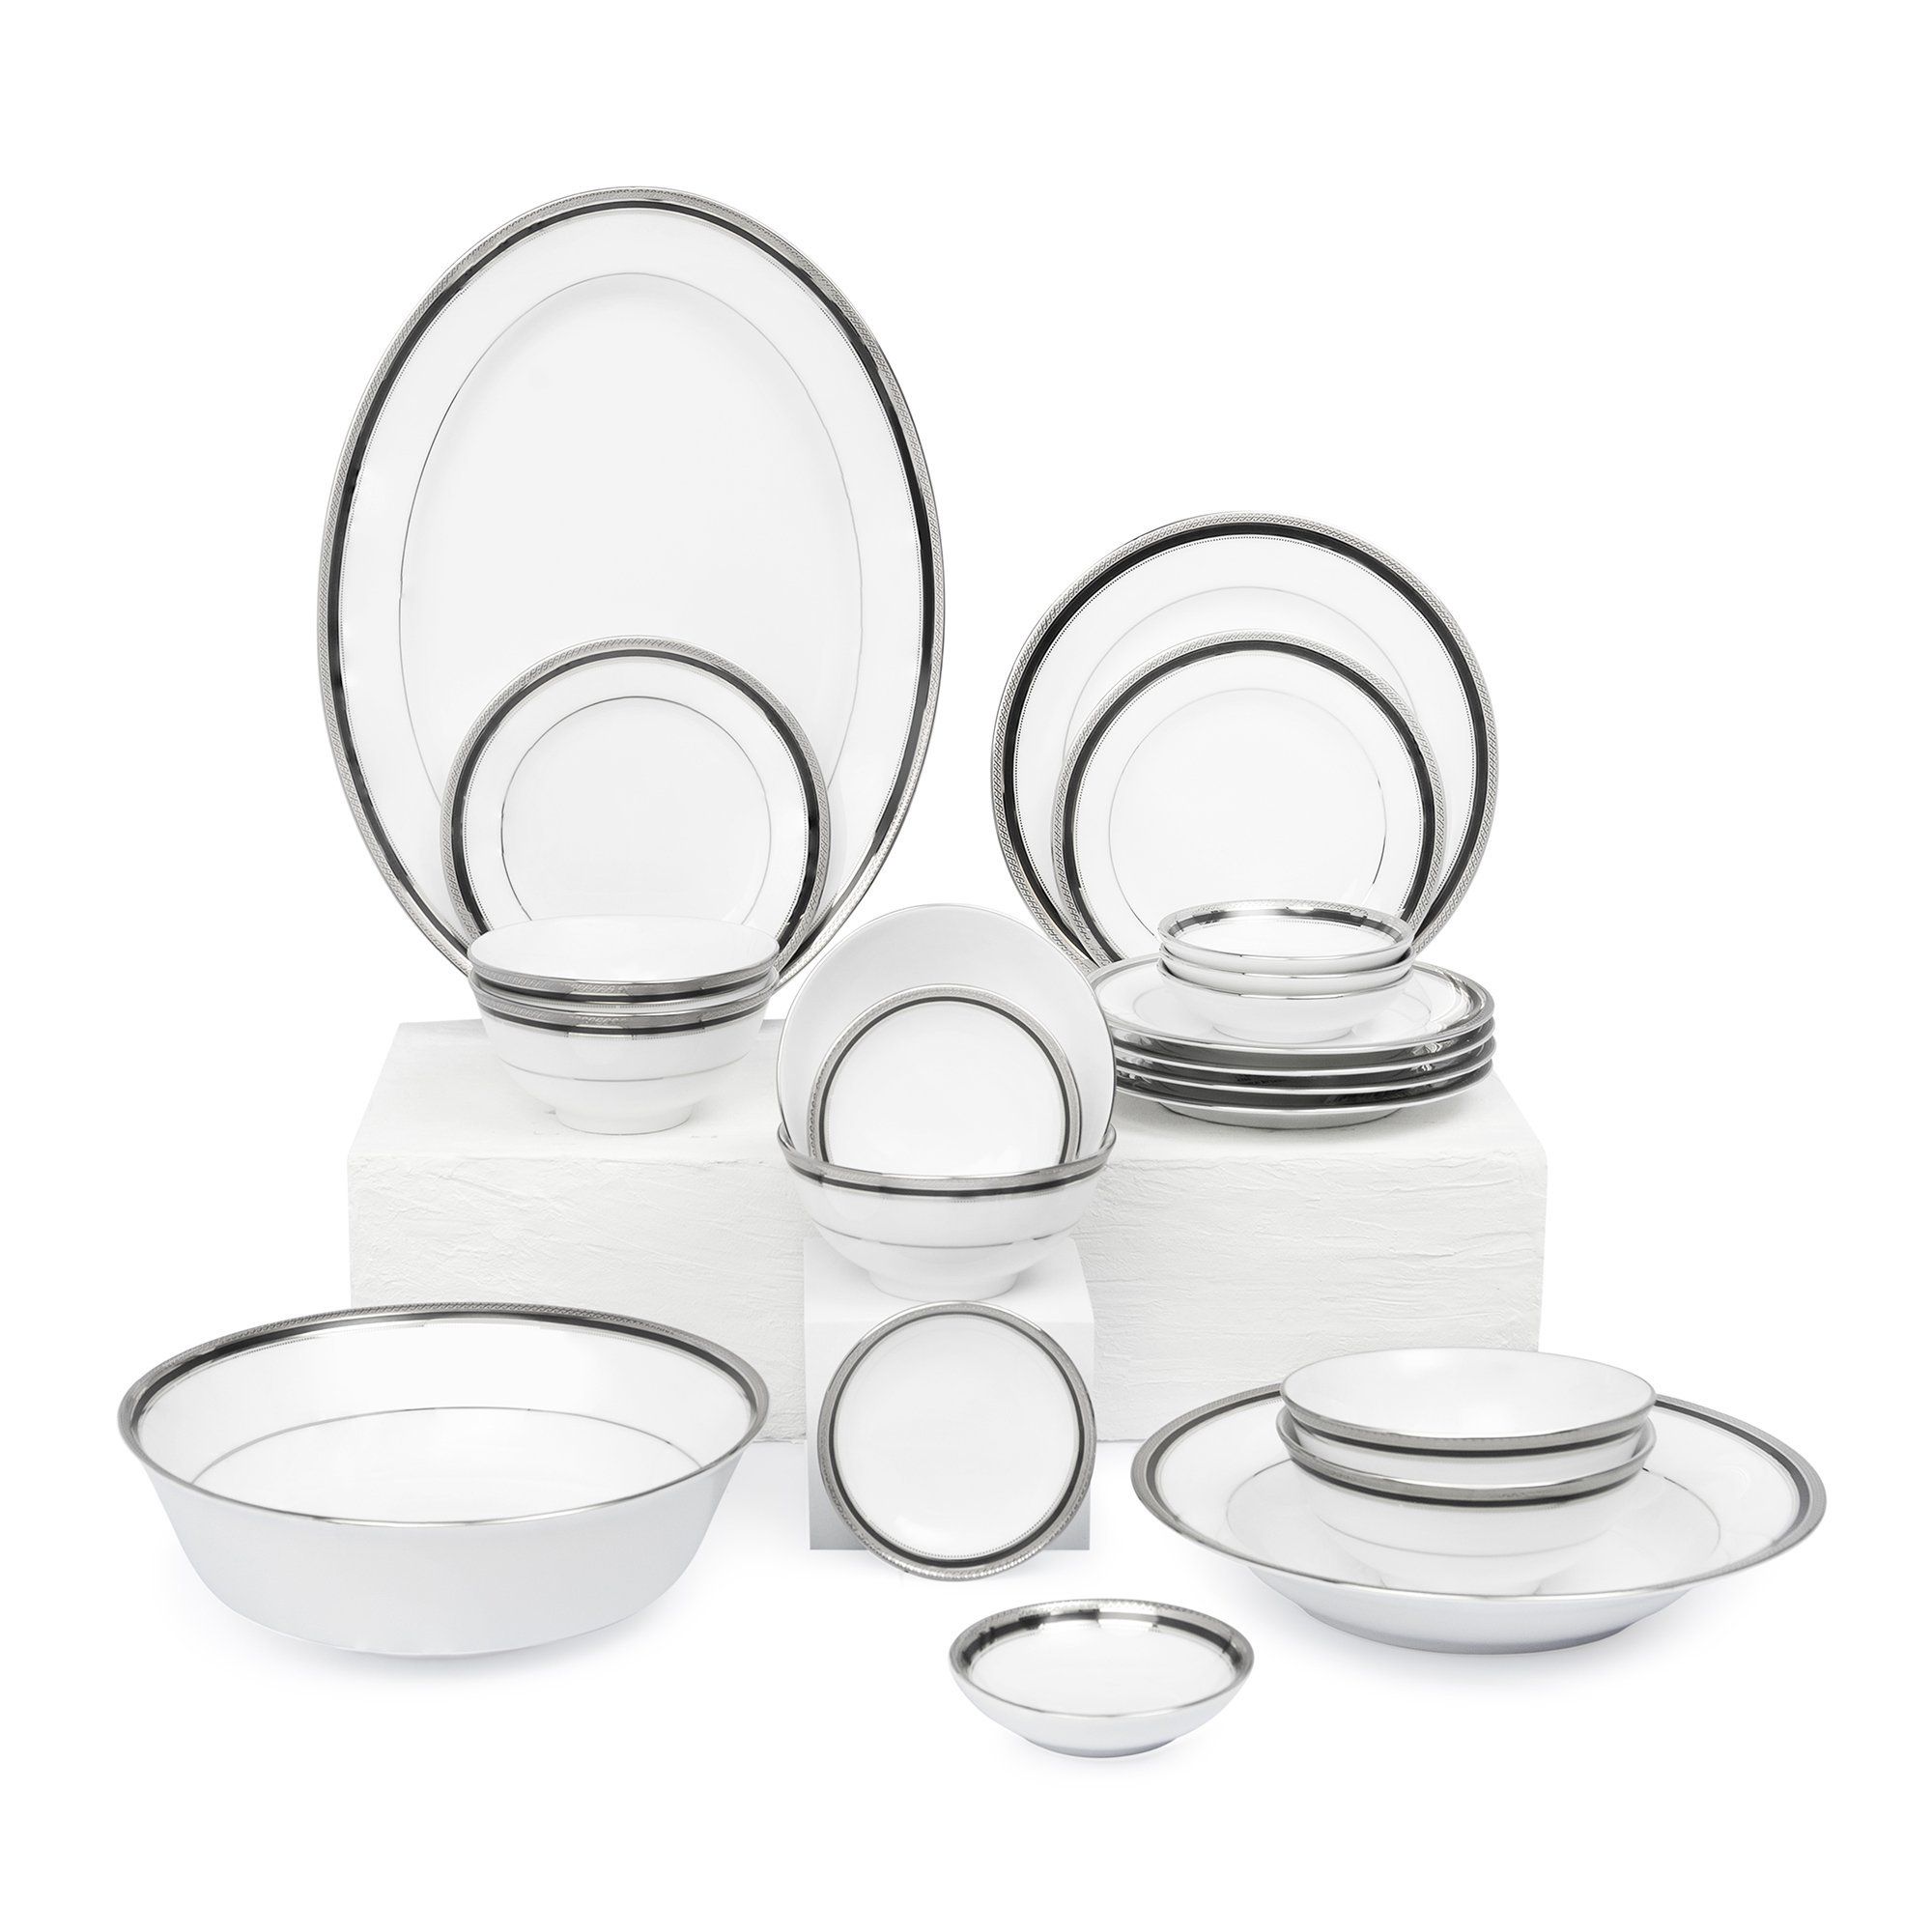  Bộ bát đĩa ăn Châu Á cơ bản 22 món sứ trắng | Austin Platinum 4360 